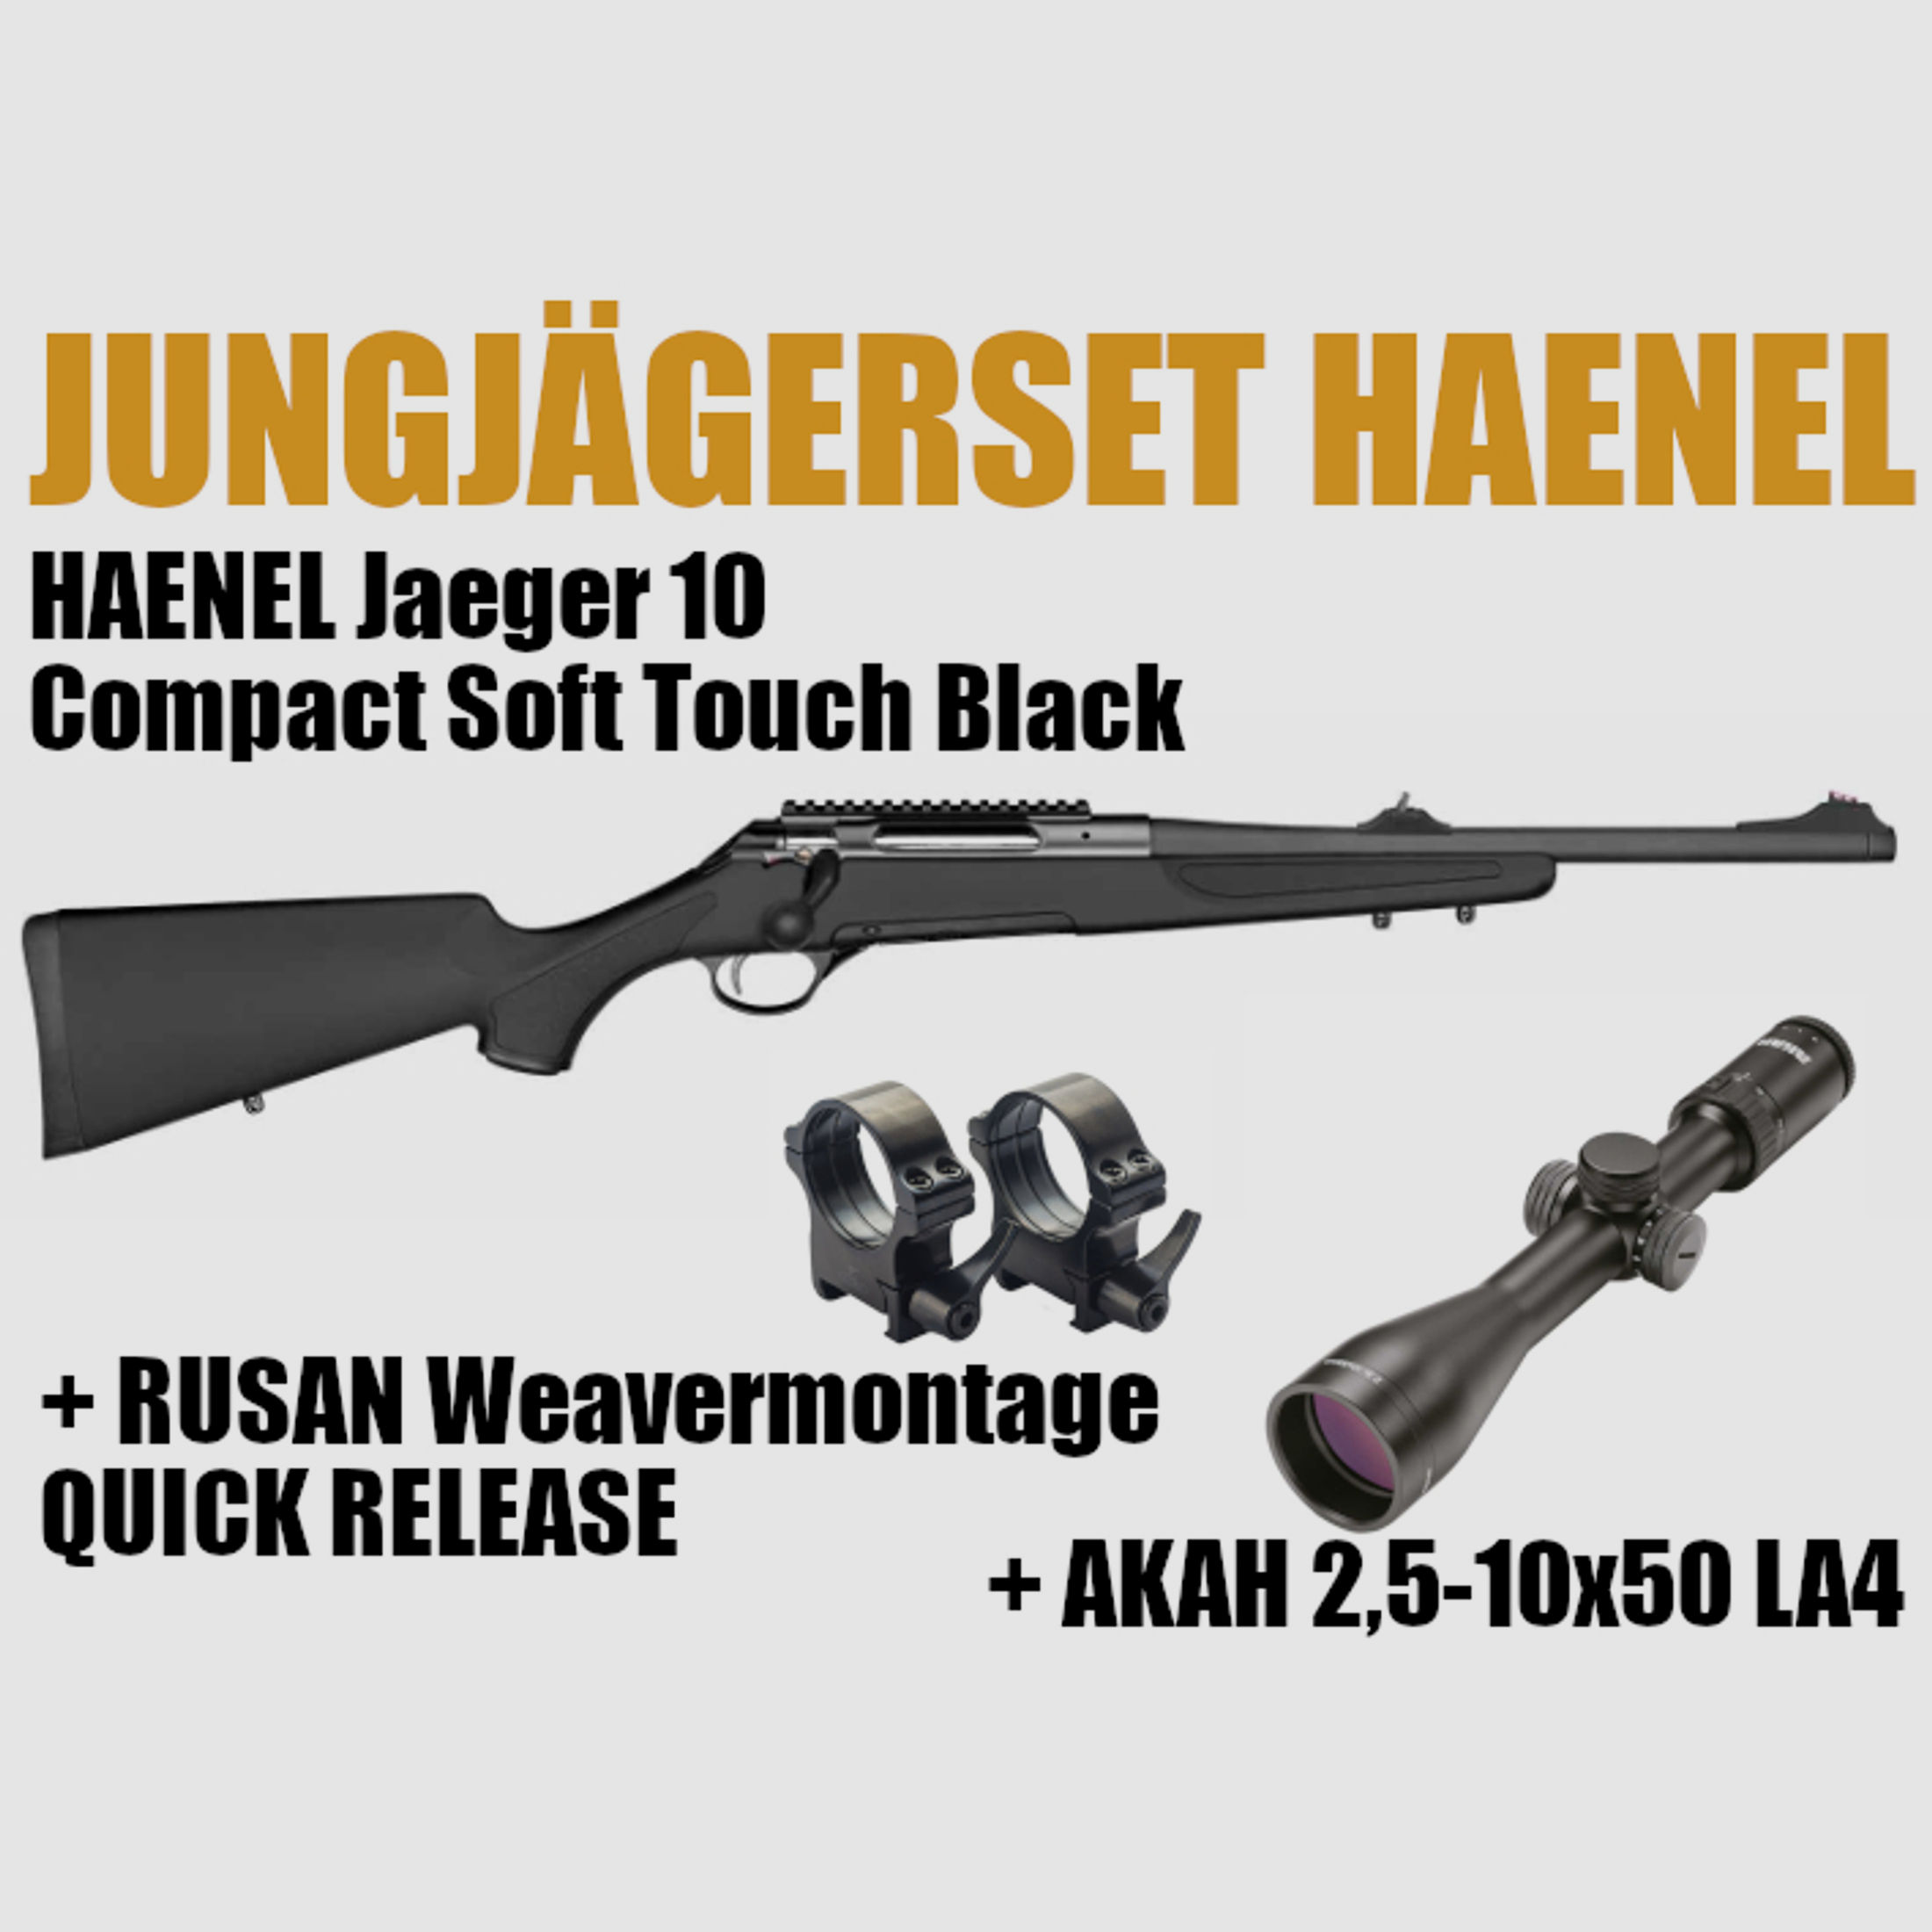 HAENEL JAEGER 10 COMPACT SOFT TOUCH BLACK 308WIN + AKAH 2,5-10X50 LA4 + RUSAN WEAVERMONTAGE QUICK RELEASE *EWB PFLICHTIG JUNGJÄGERPAKET